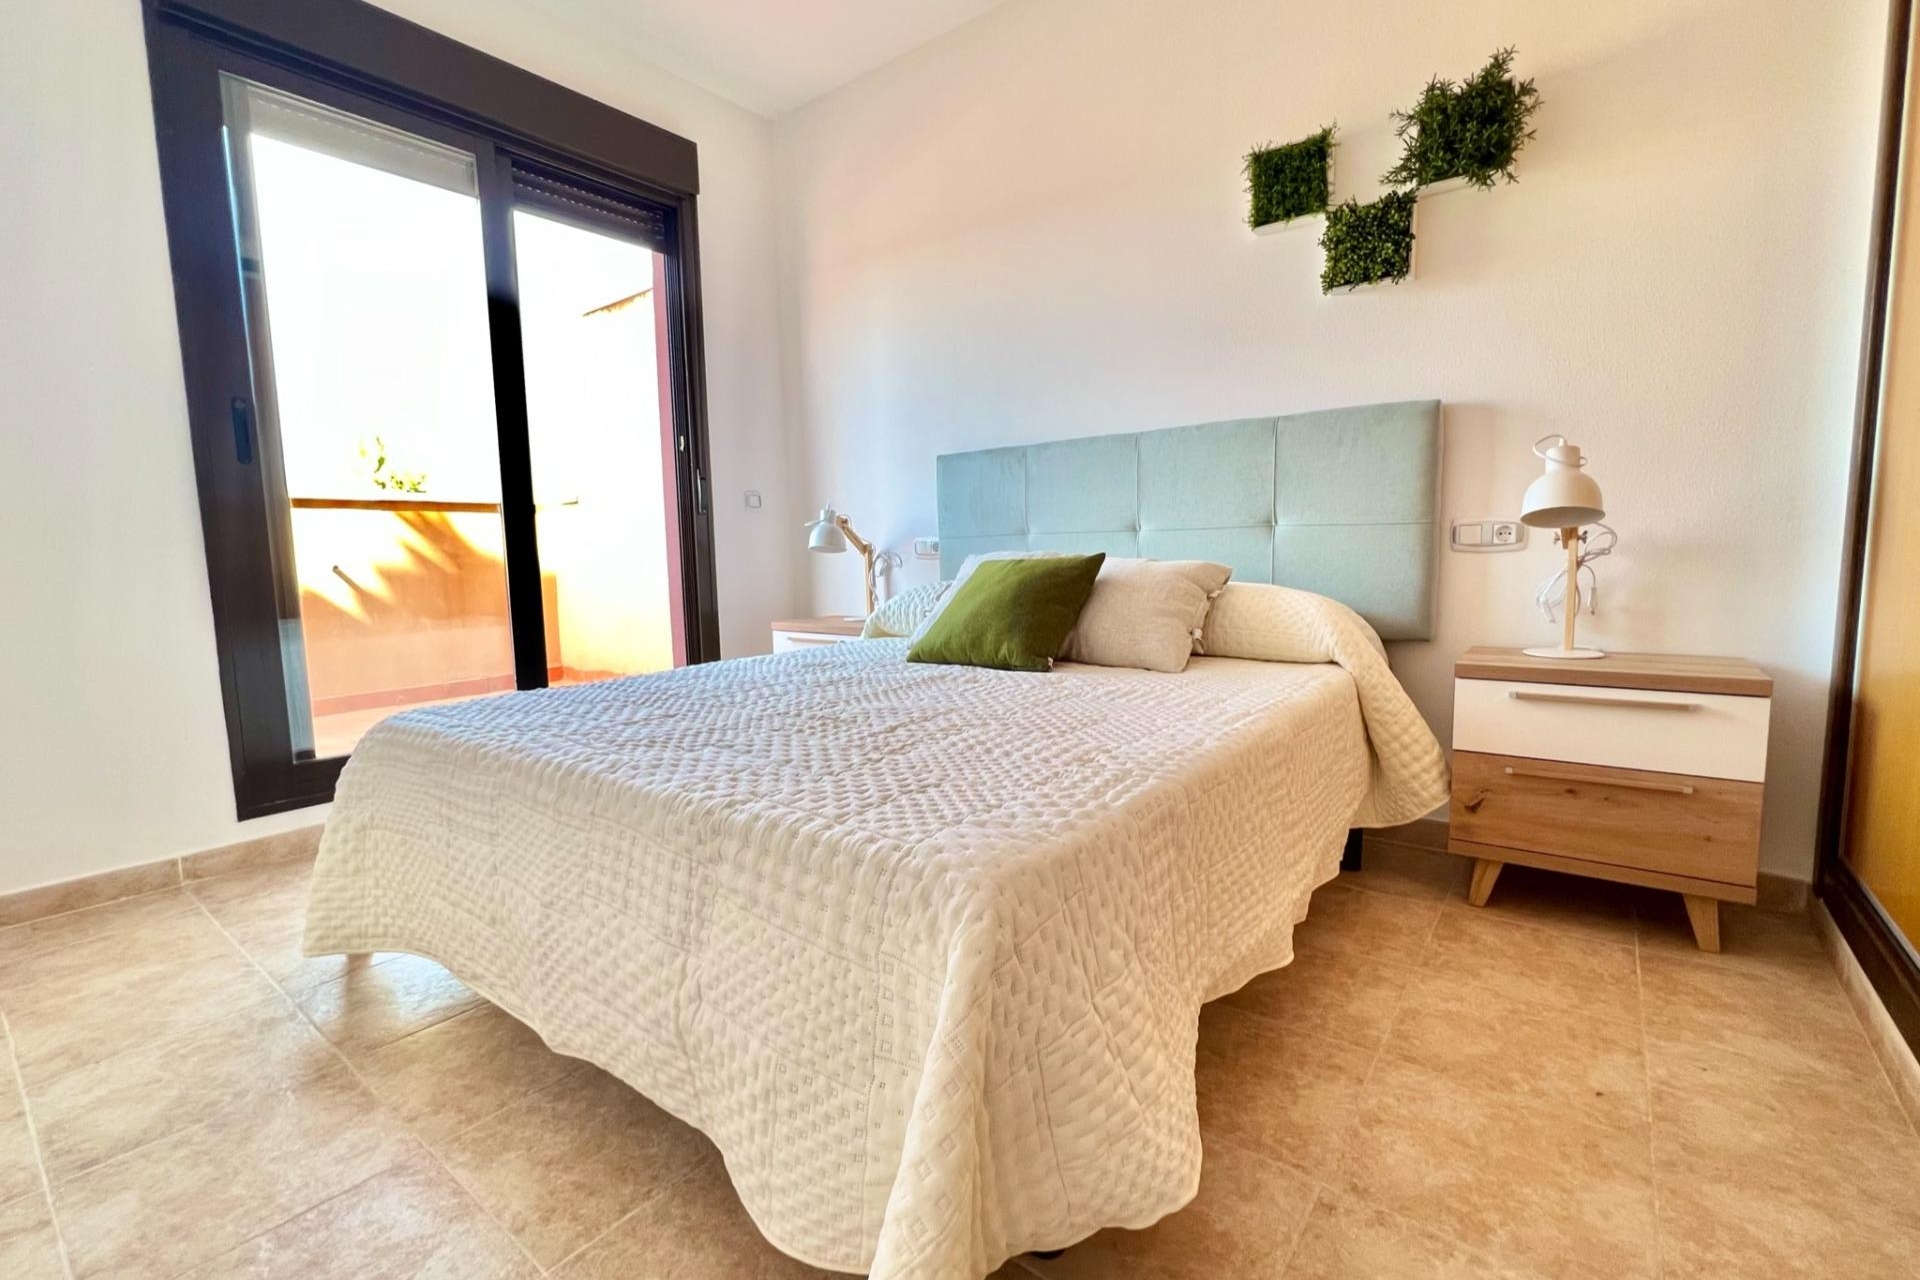 Propiedad en venta - Apartment for sale - Aguilas - Collado Bajo